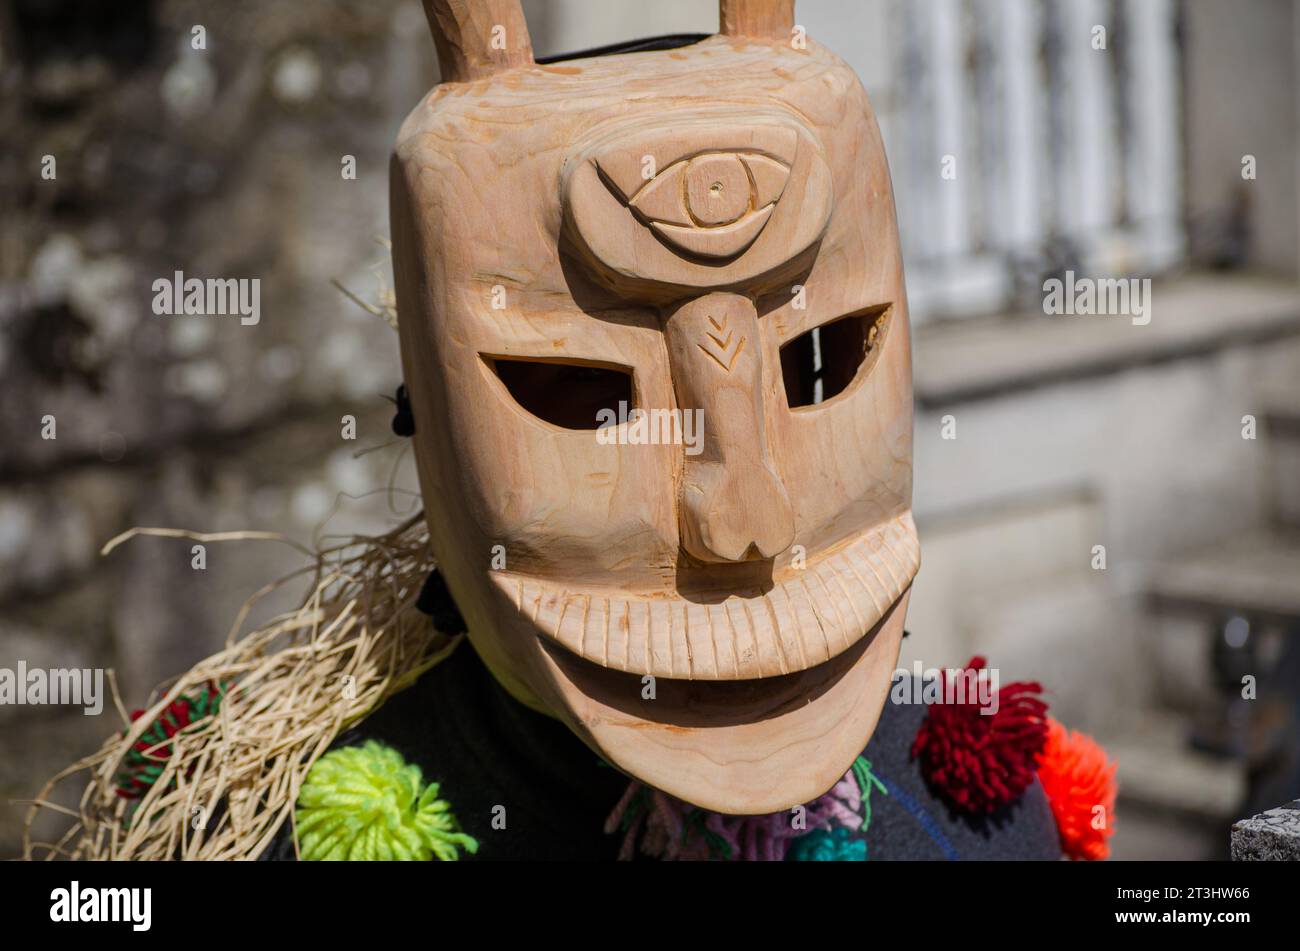 Traditionelle Maske des Karnevals von Lazarim. Portugal. Careto do Lazarim. Stockfoto